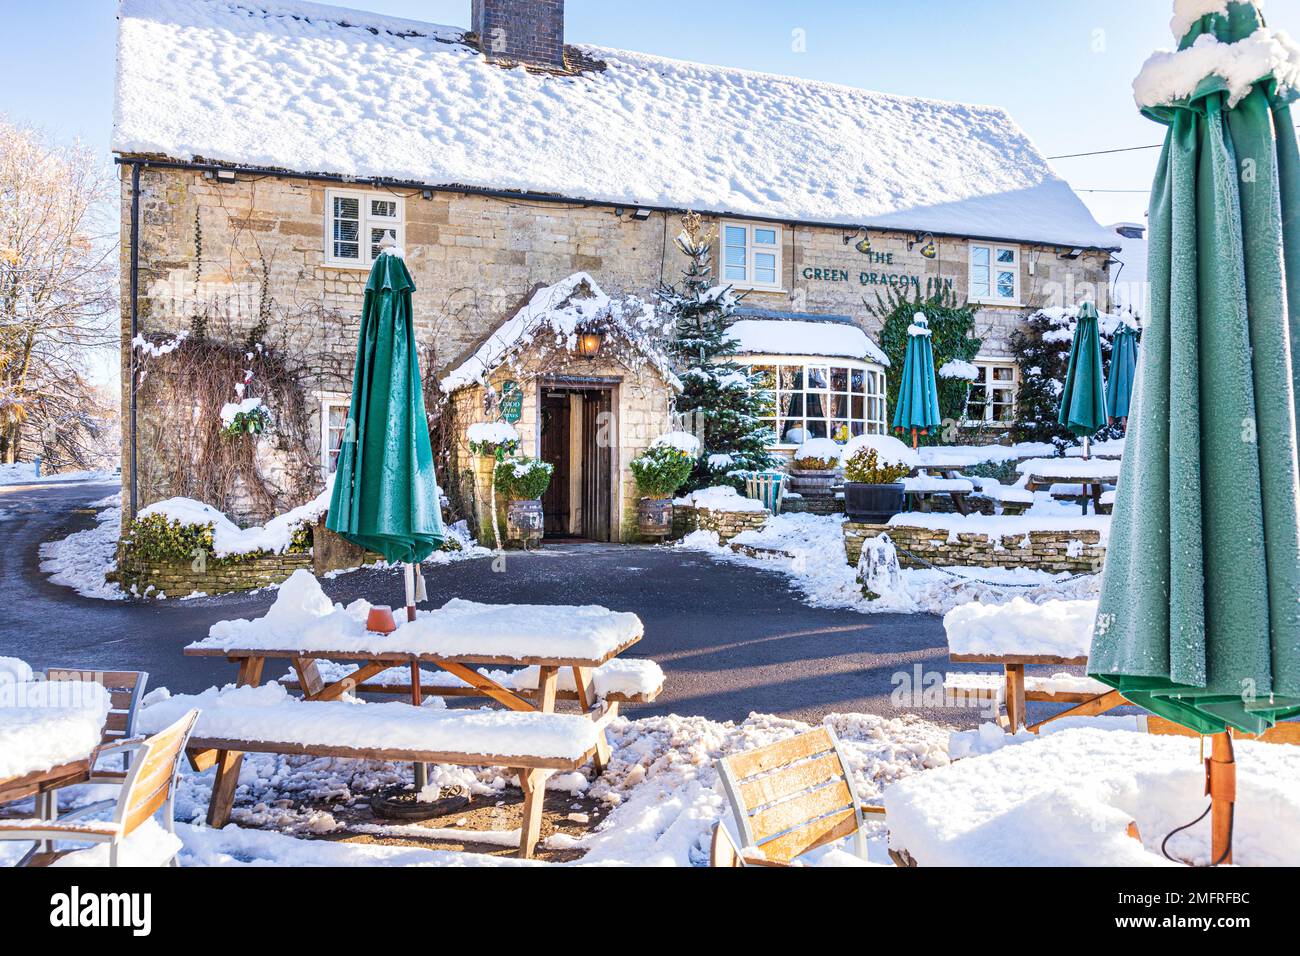 Début de l'hiver neige au Green Dragon Inn Pub dans le village de Cotswold de Cockleford près de Cowley, Gloucestershire, Angleterre Banque D'Images